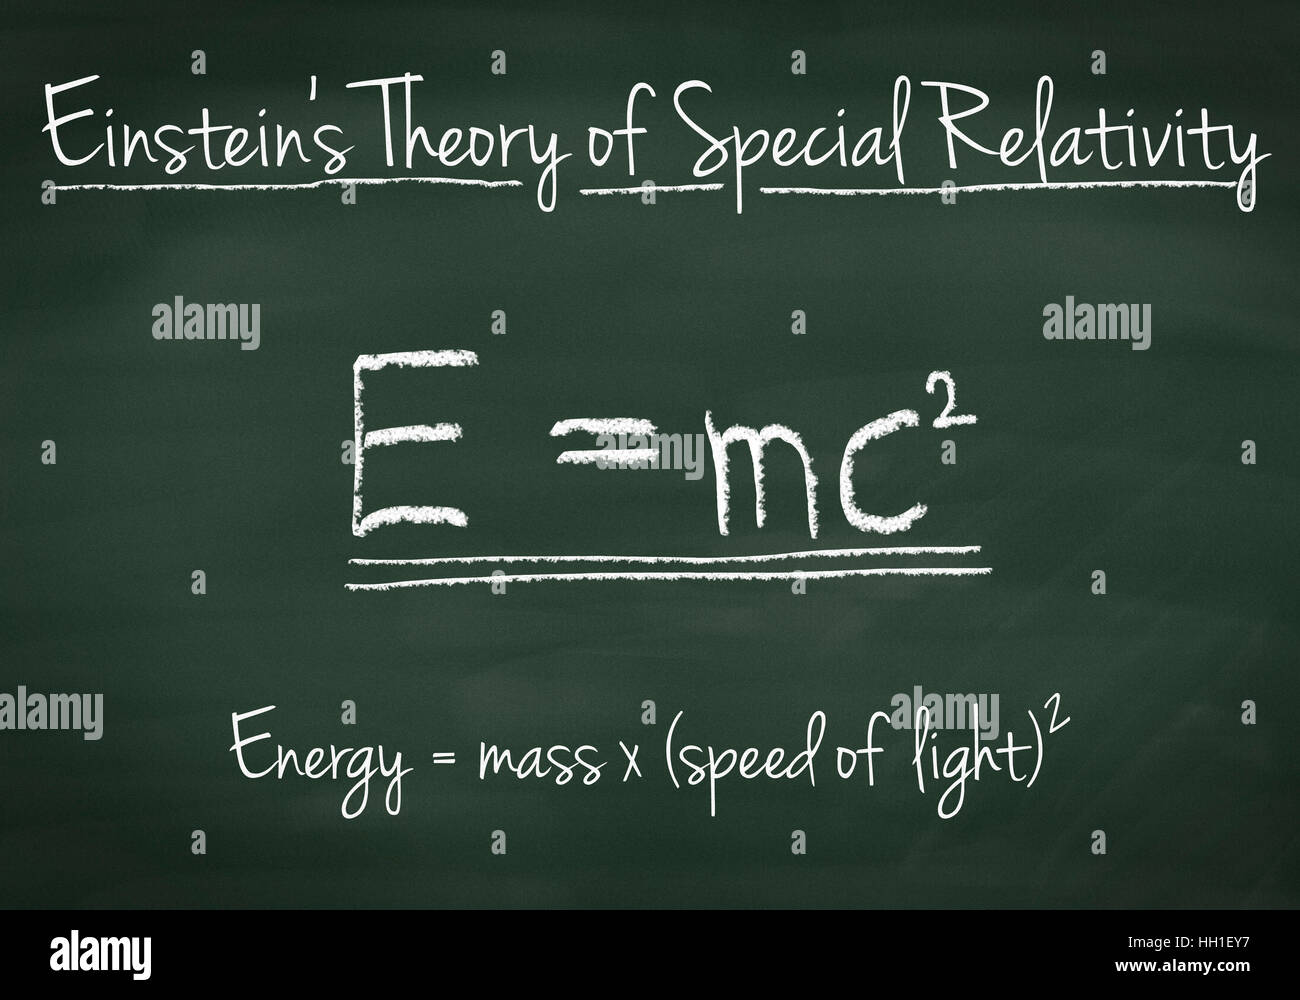 La théorie d'Einstein de la relativité restreinte a expliqué sur une ardoise Banque D'Images